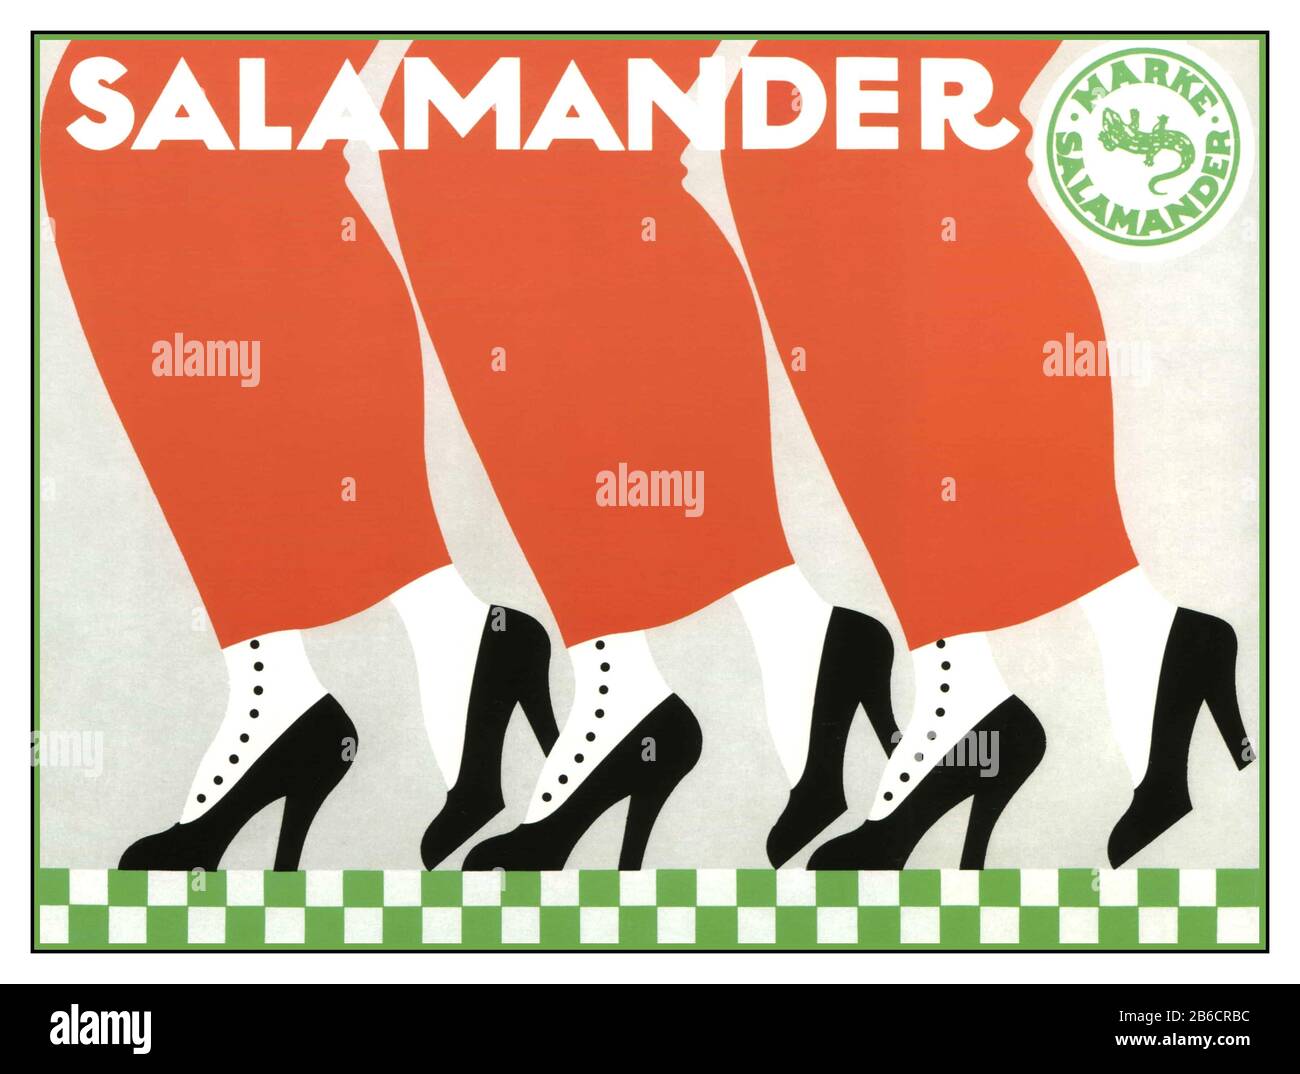 Scarpe Da Salamandra Vintage 1912 Poster Tedesco Advertisement Salamander Shoes.'Meke Salamander' Art Deco Design Vintage Salamander Fashion Advertt Poster Marke Salamander Shoes By Ernst Deutsch Dryden, Salamander Shoes, 1912 (Salamander-Schuhe, 1912) Foto Stock